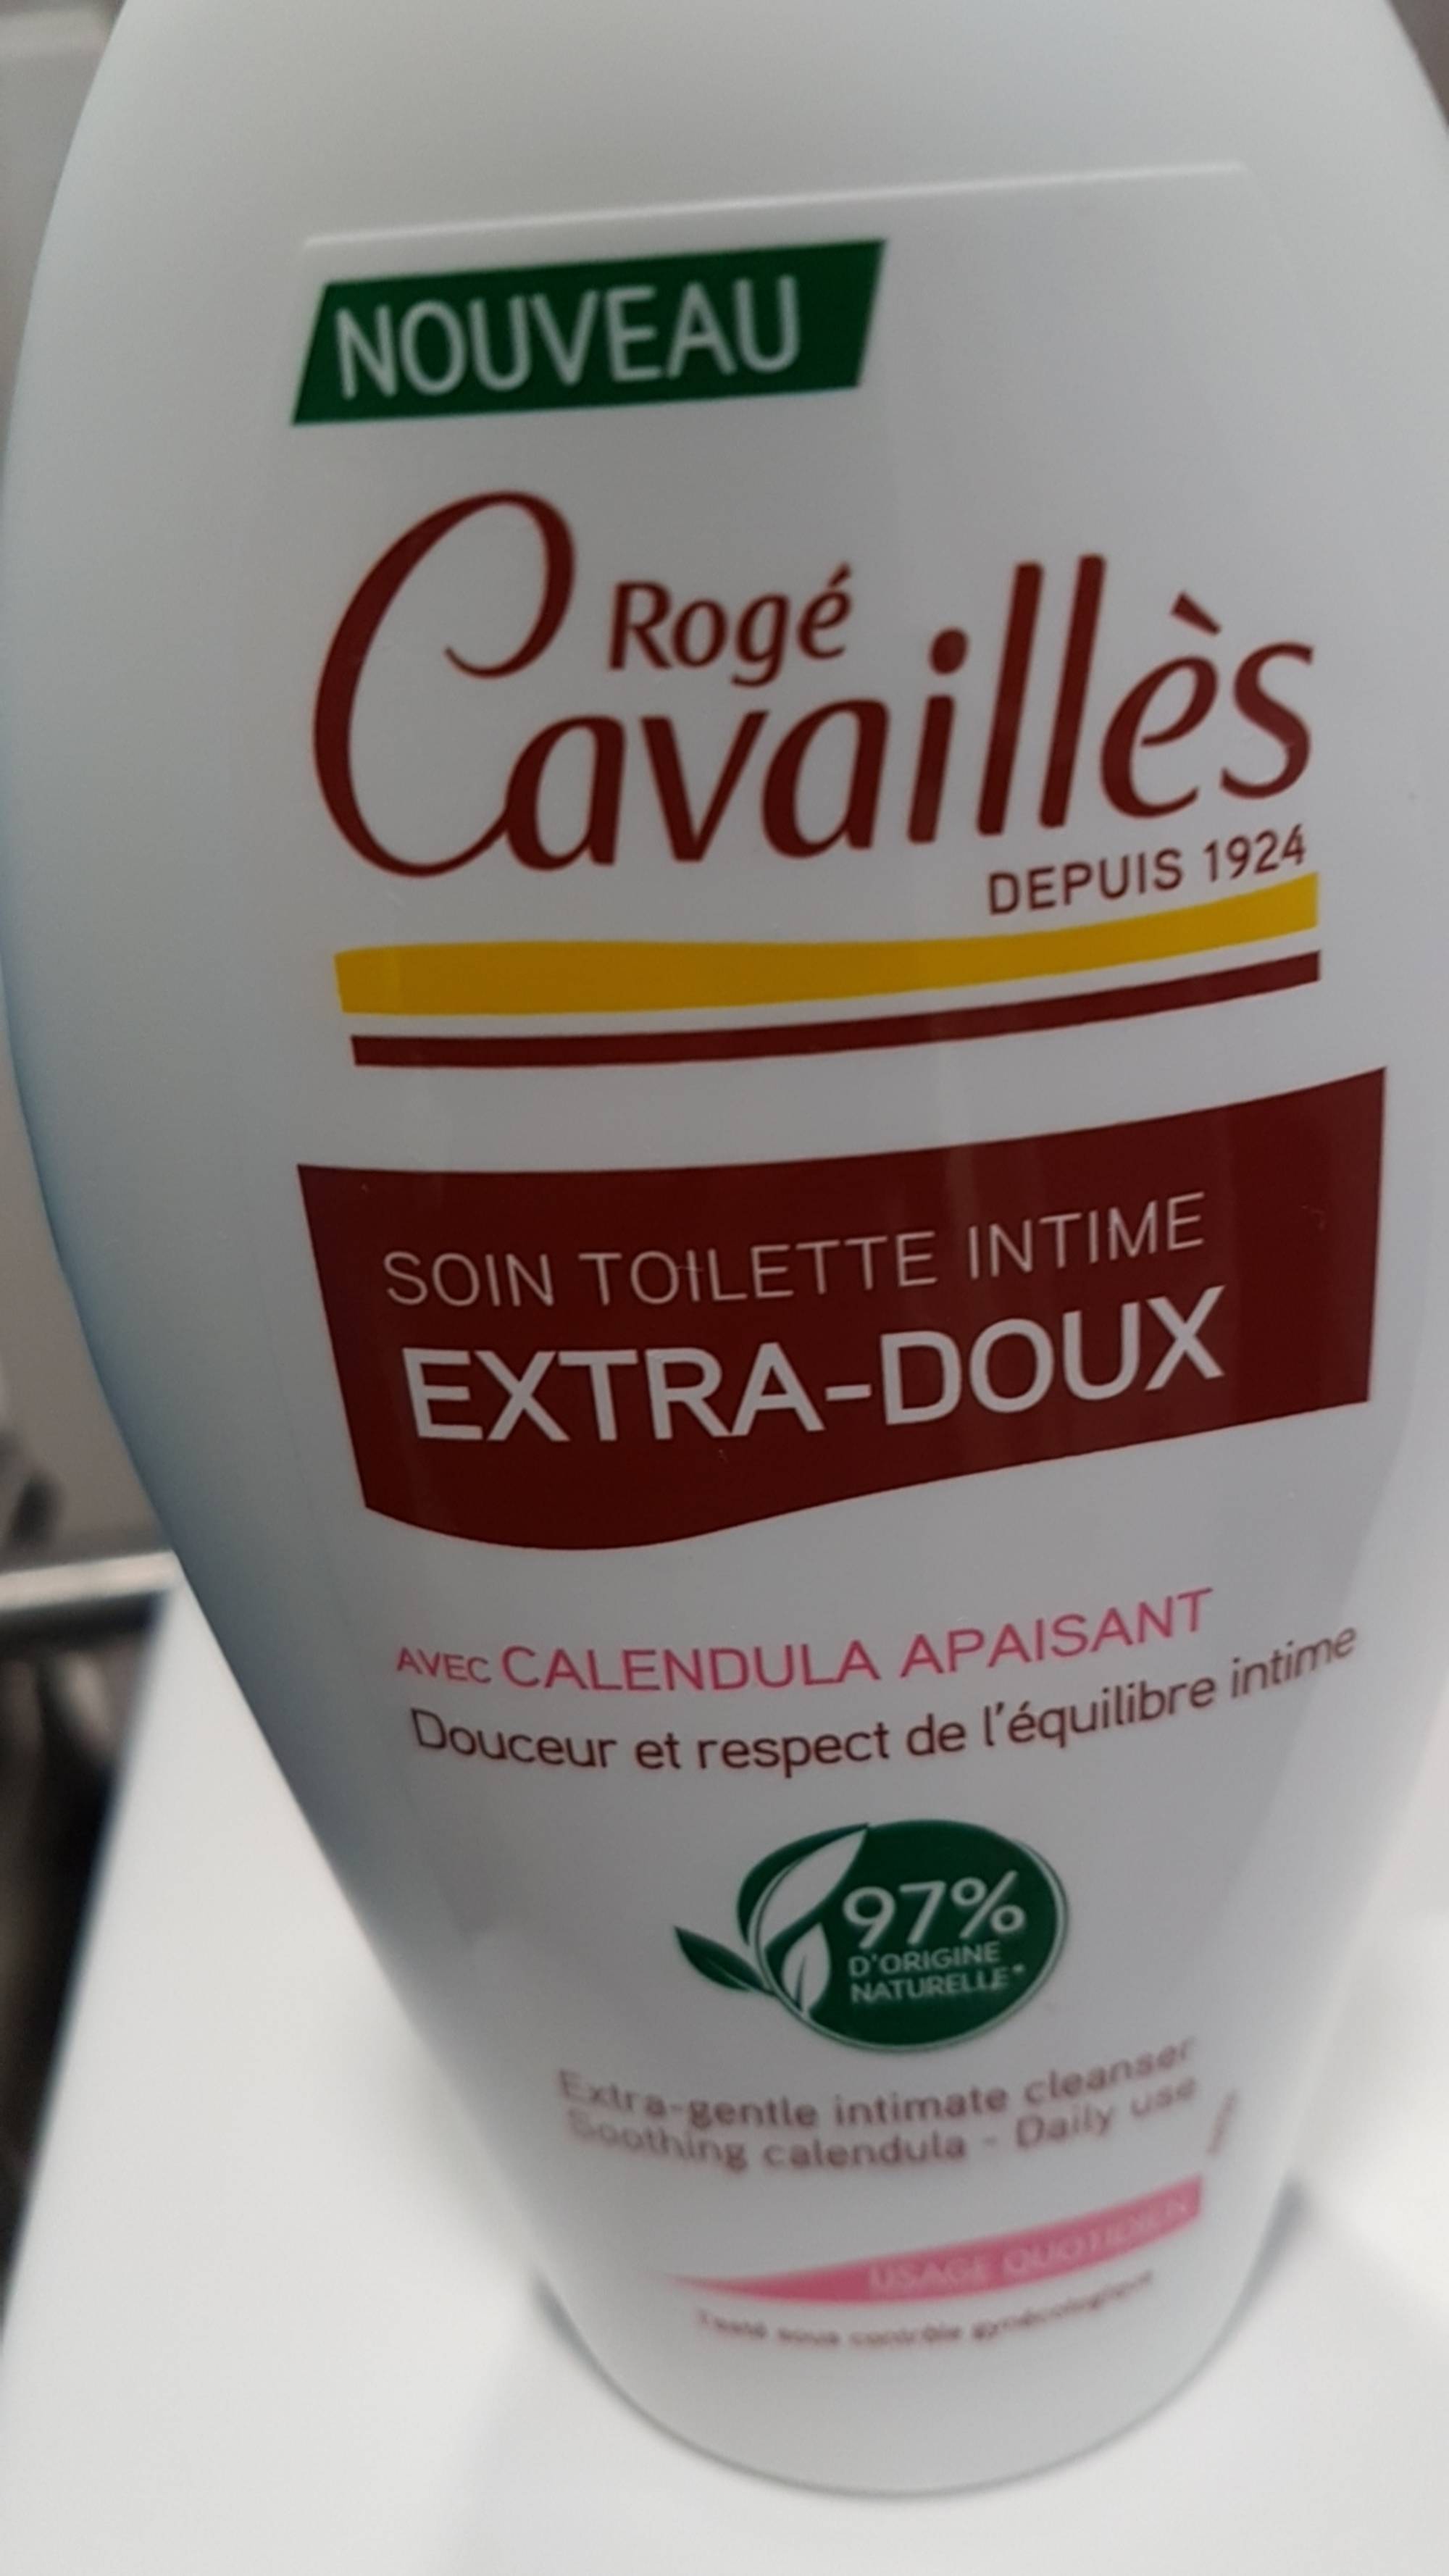 ROGÉ CAVAILLÈS - Soin toilette intime extra-doux avec calendula apaisant